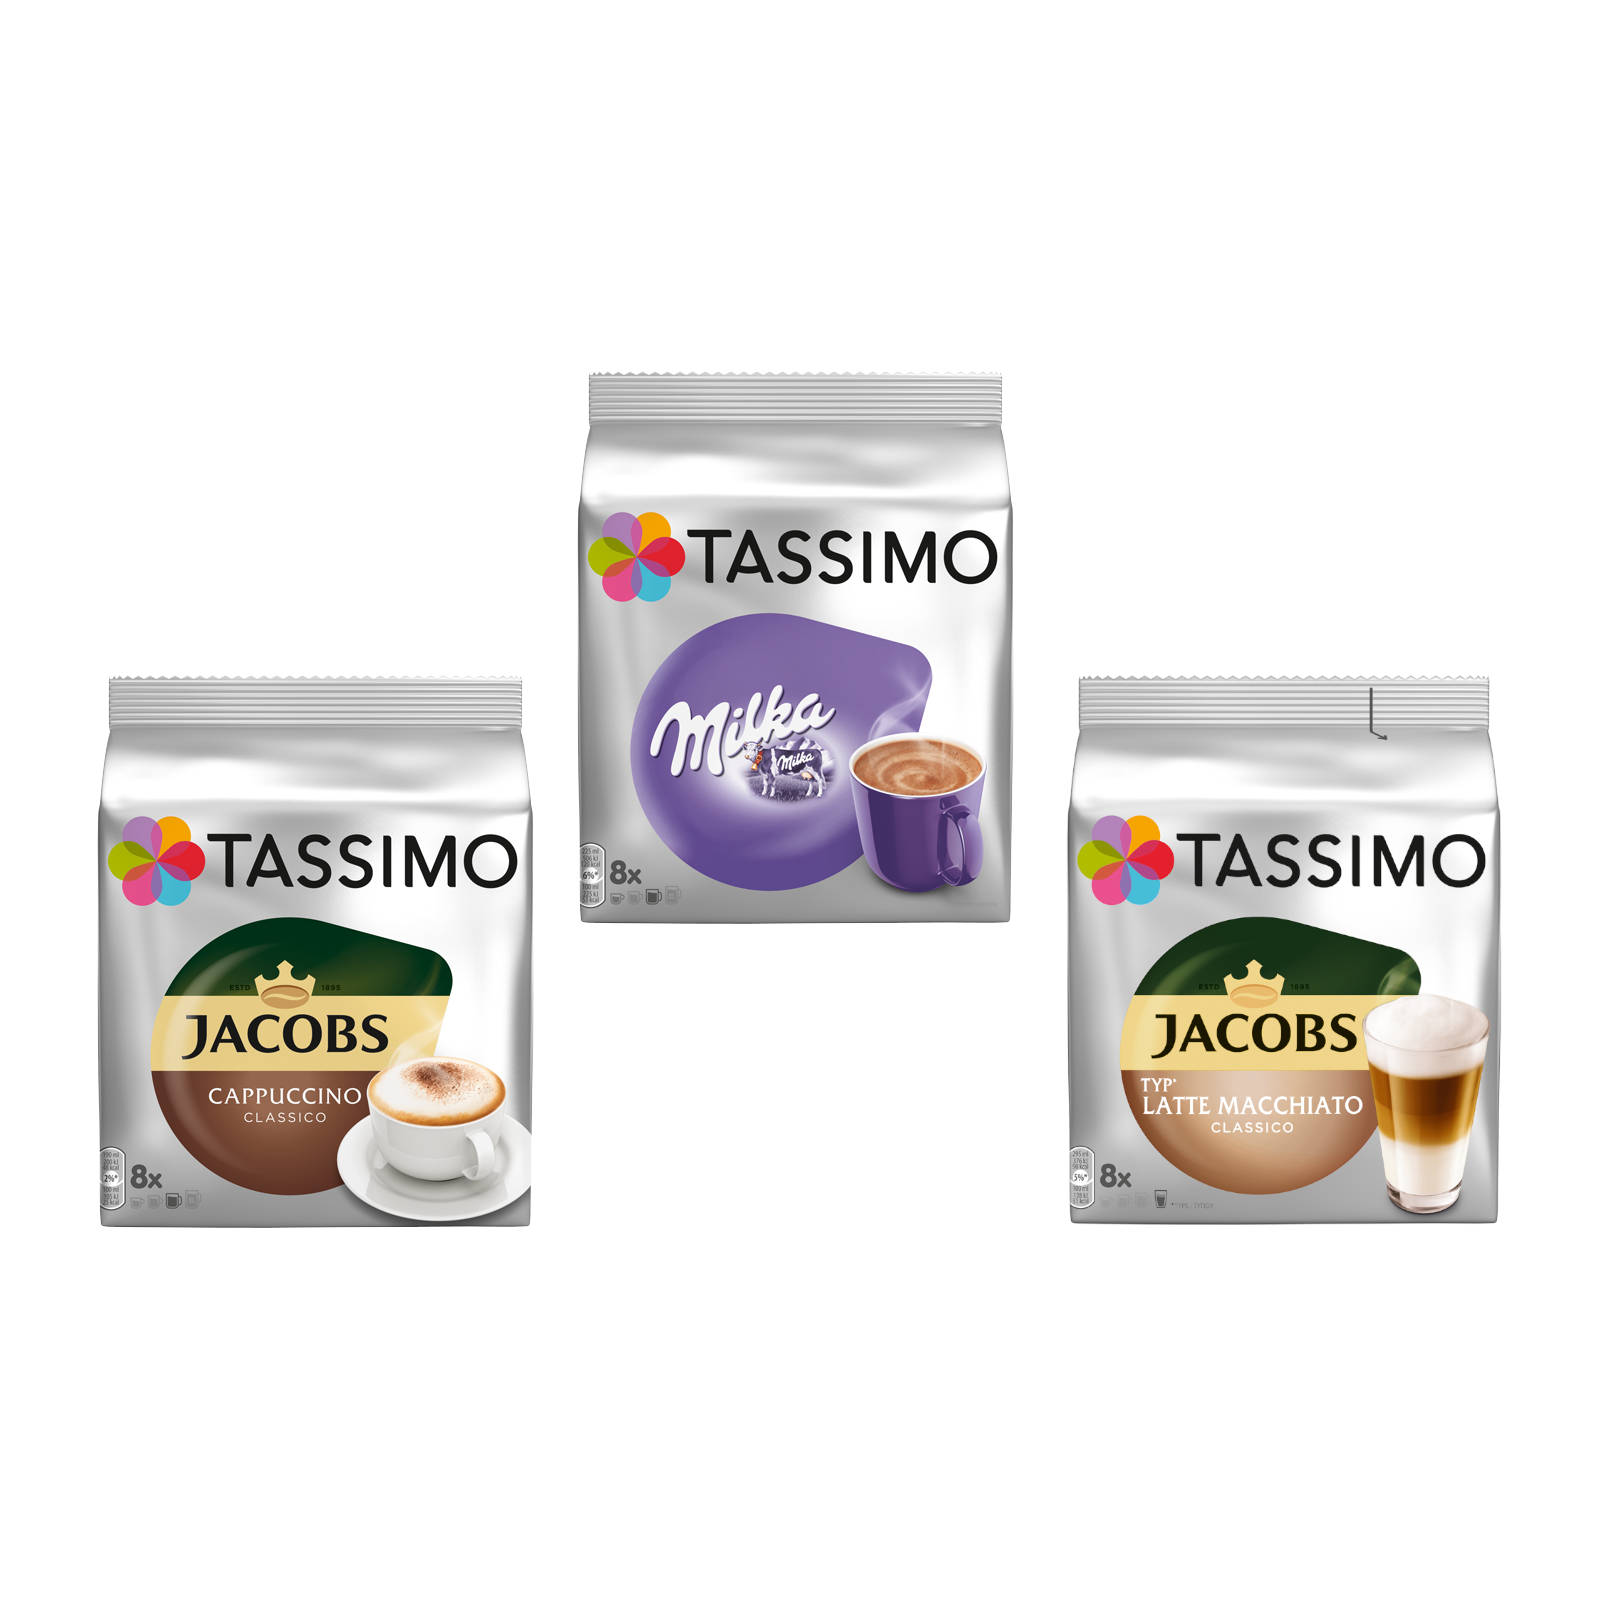 TASSIMO Creamy Macchiato (T-Disc (Tassimo Cappuccino Latte Kaffeekapseln System)) Milka Maschine Collection Classico